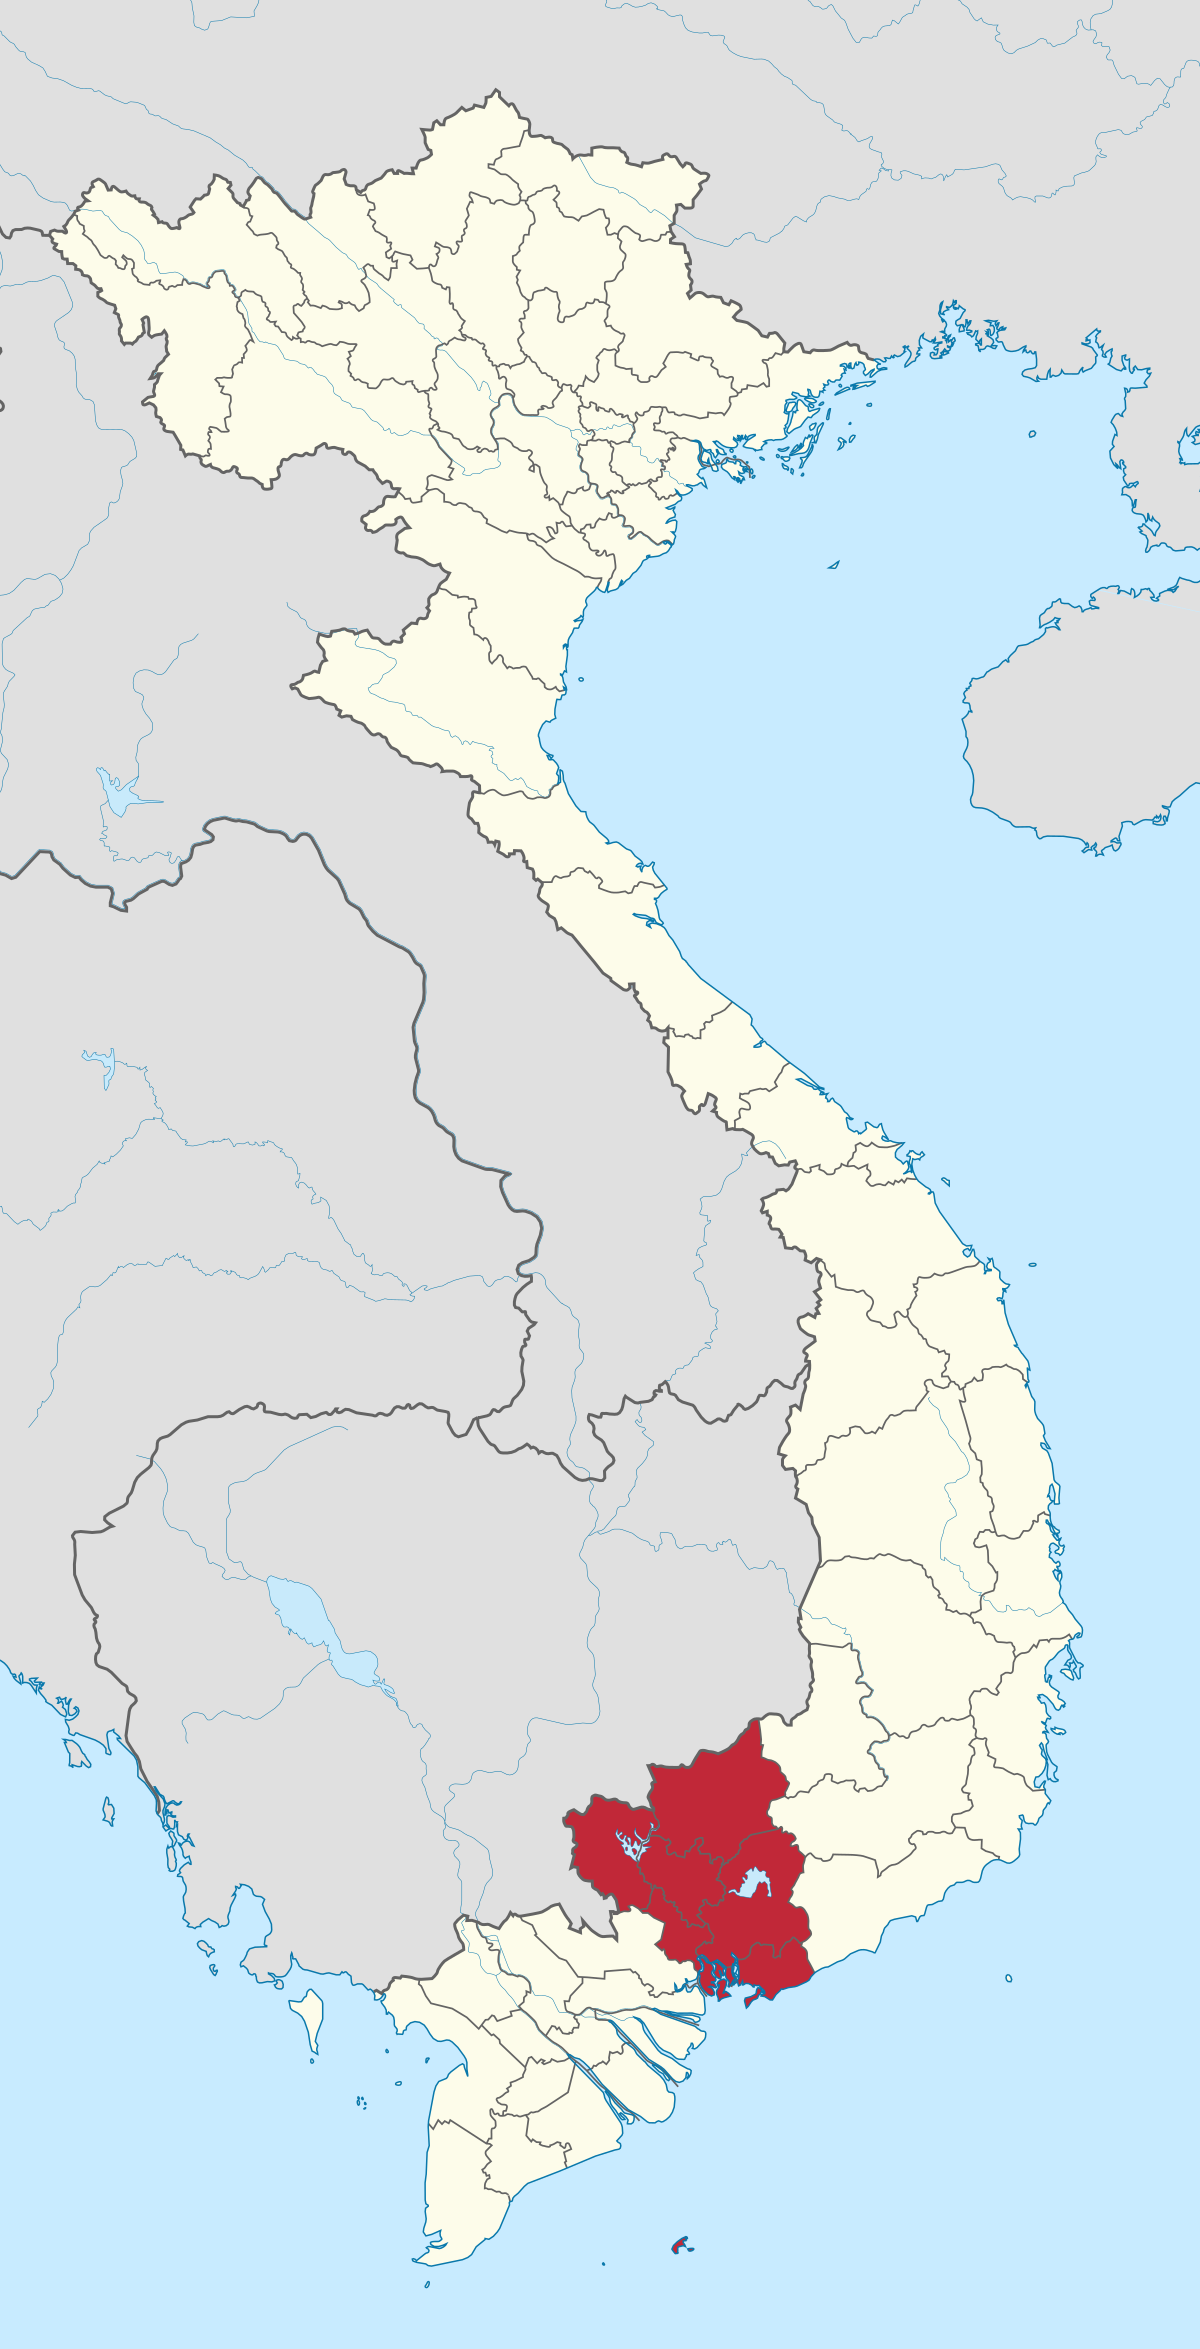 Đông Nam Bộ là vùng đất rộng lớn, nhiều tiềm năng và tài nguyên. Tuy nhiên, còn rất nhiều điều chúng ta chưa biết về địa lý, văn hóa và lịch sử của vùng này. Truy cập Đông Nam Bộ - Wikipedia để khám phá thêm những thông tin thú vị và tìm hiểu về nơi đây.